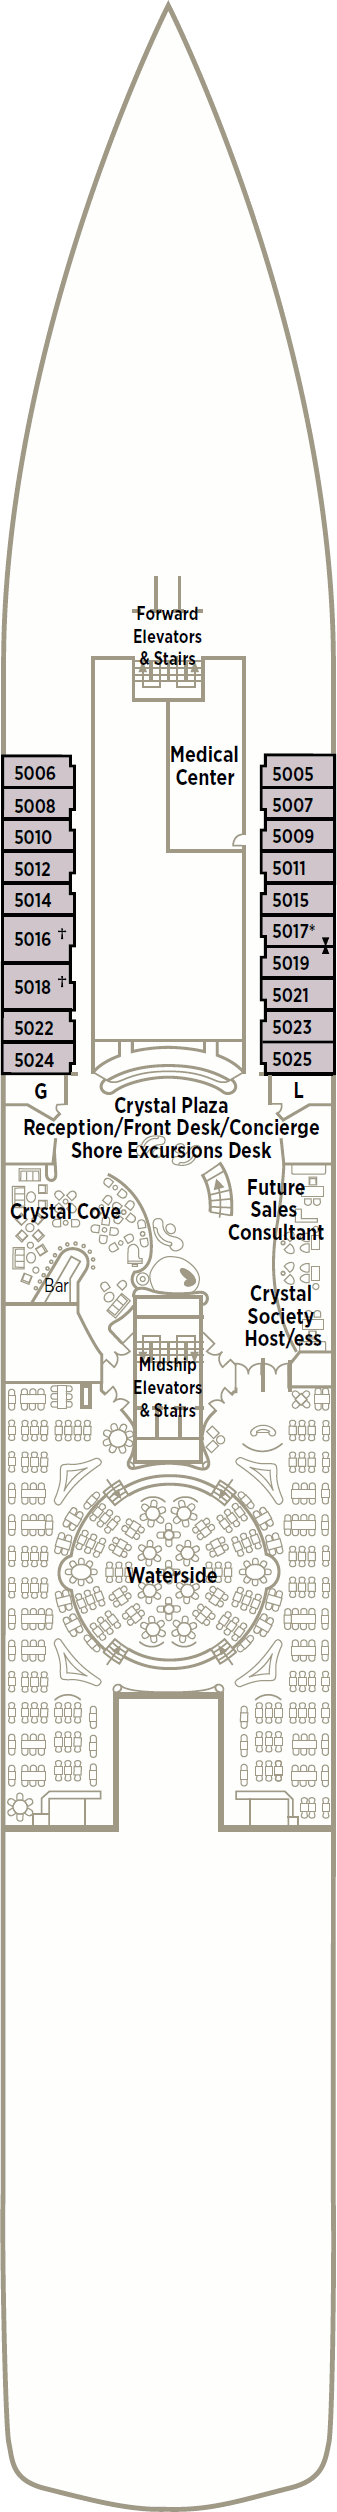 Crystal Symphony Crystal Deck Deck Plan